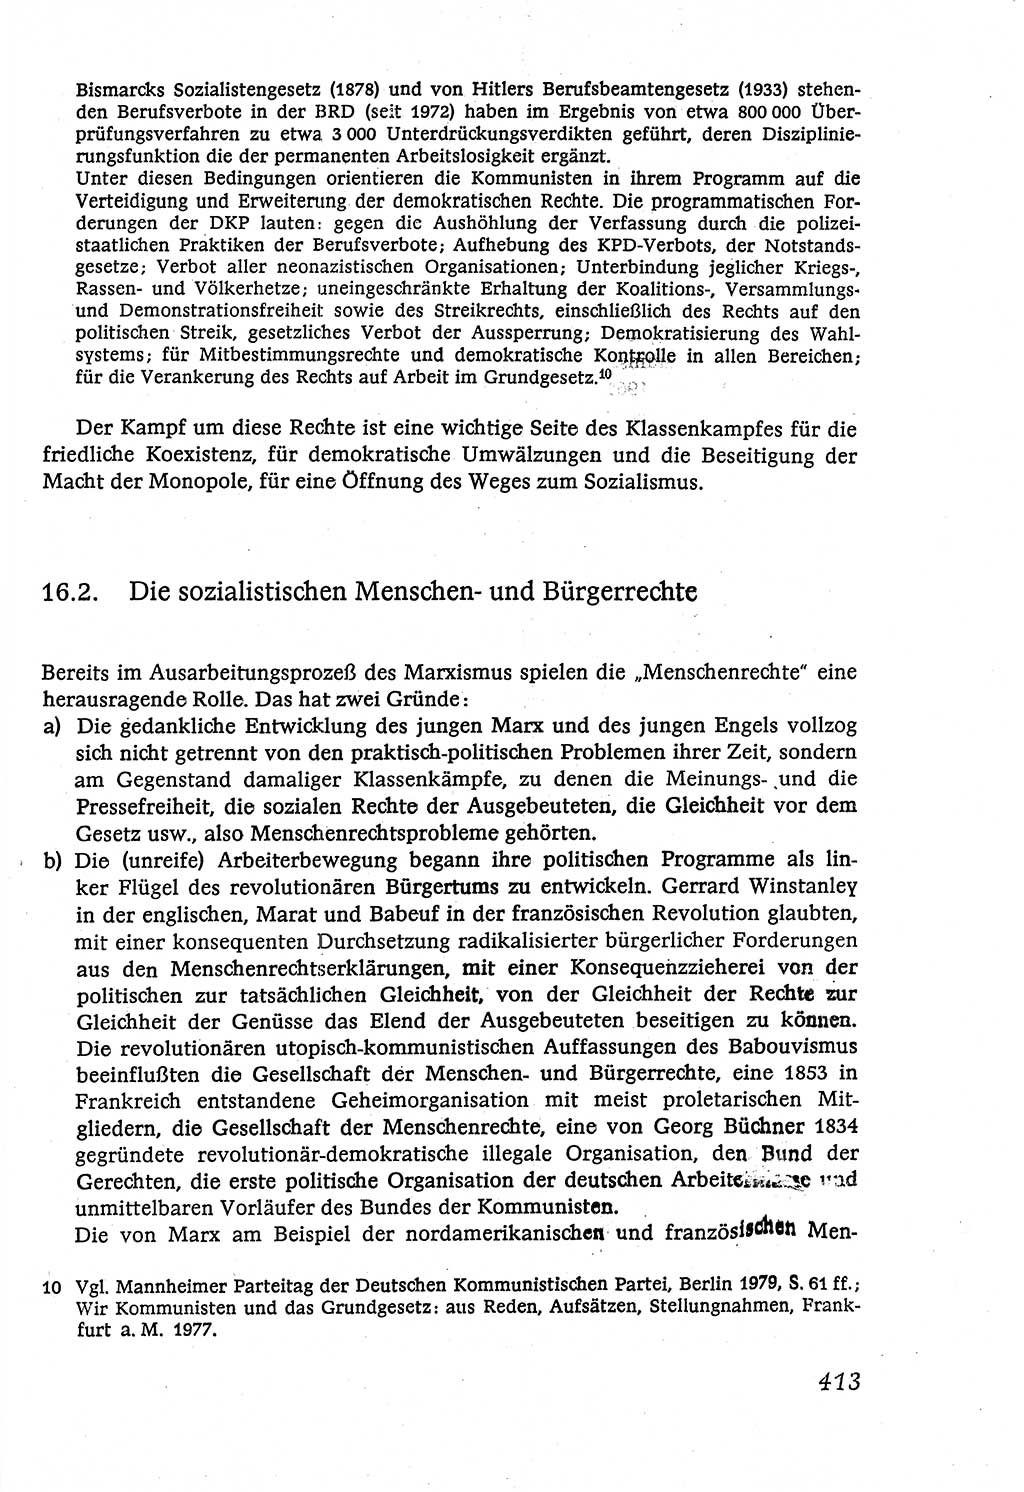 Marxistisch-leninistische (ML) Staats- und Rechtstheorie [Deutsche Demokratische Republik (DDR)], Lehrbuch 1980, Seite 413 (ML St.-R.-Th. DDR Lb. 1980, S. 413)